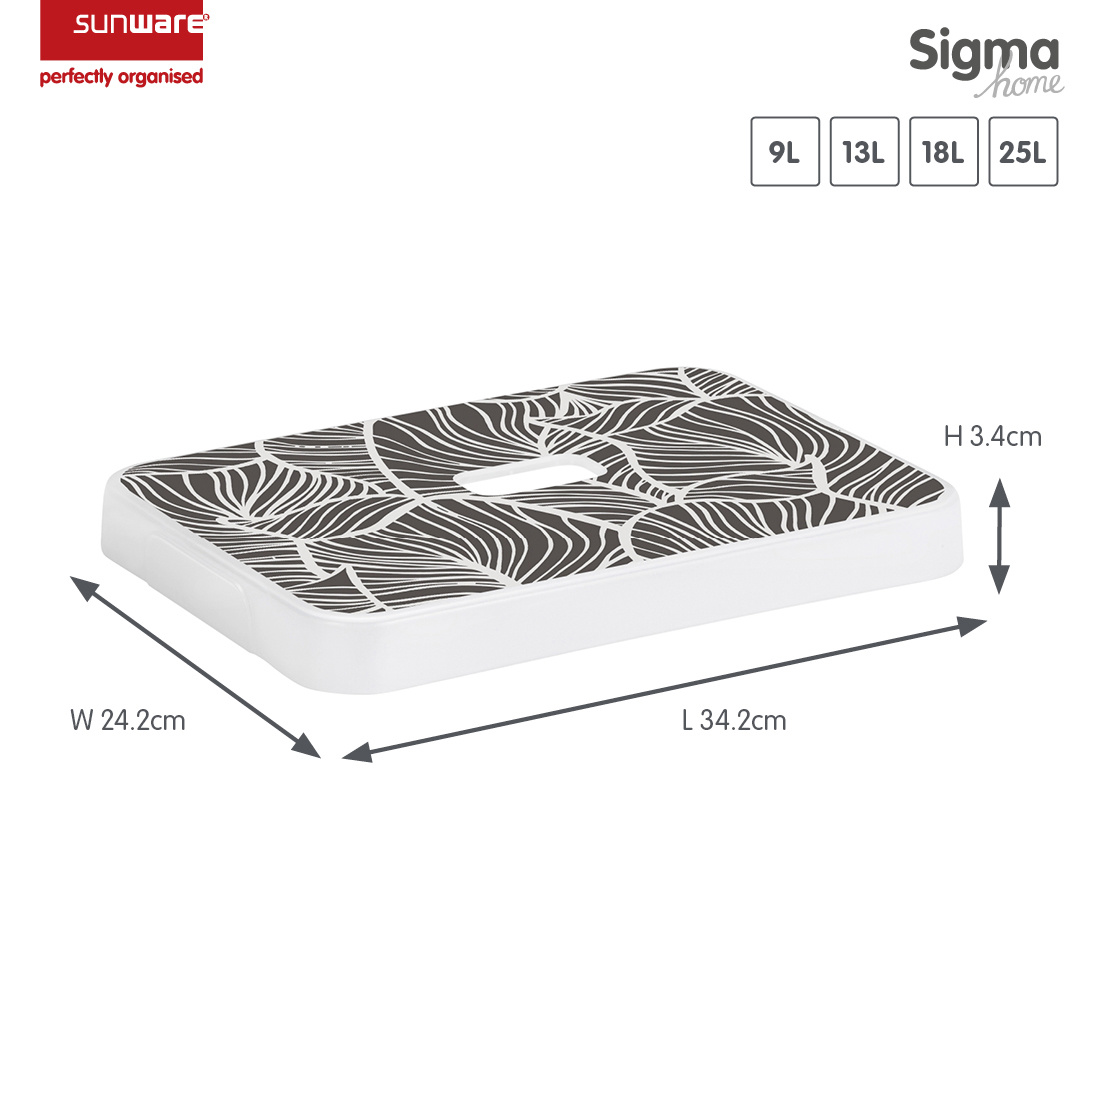 Sigma home couvercle feuilles - boîte de rangement 9L, 13L, 18L et 25L  